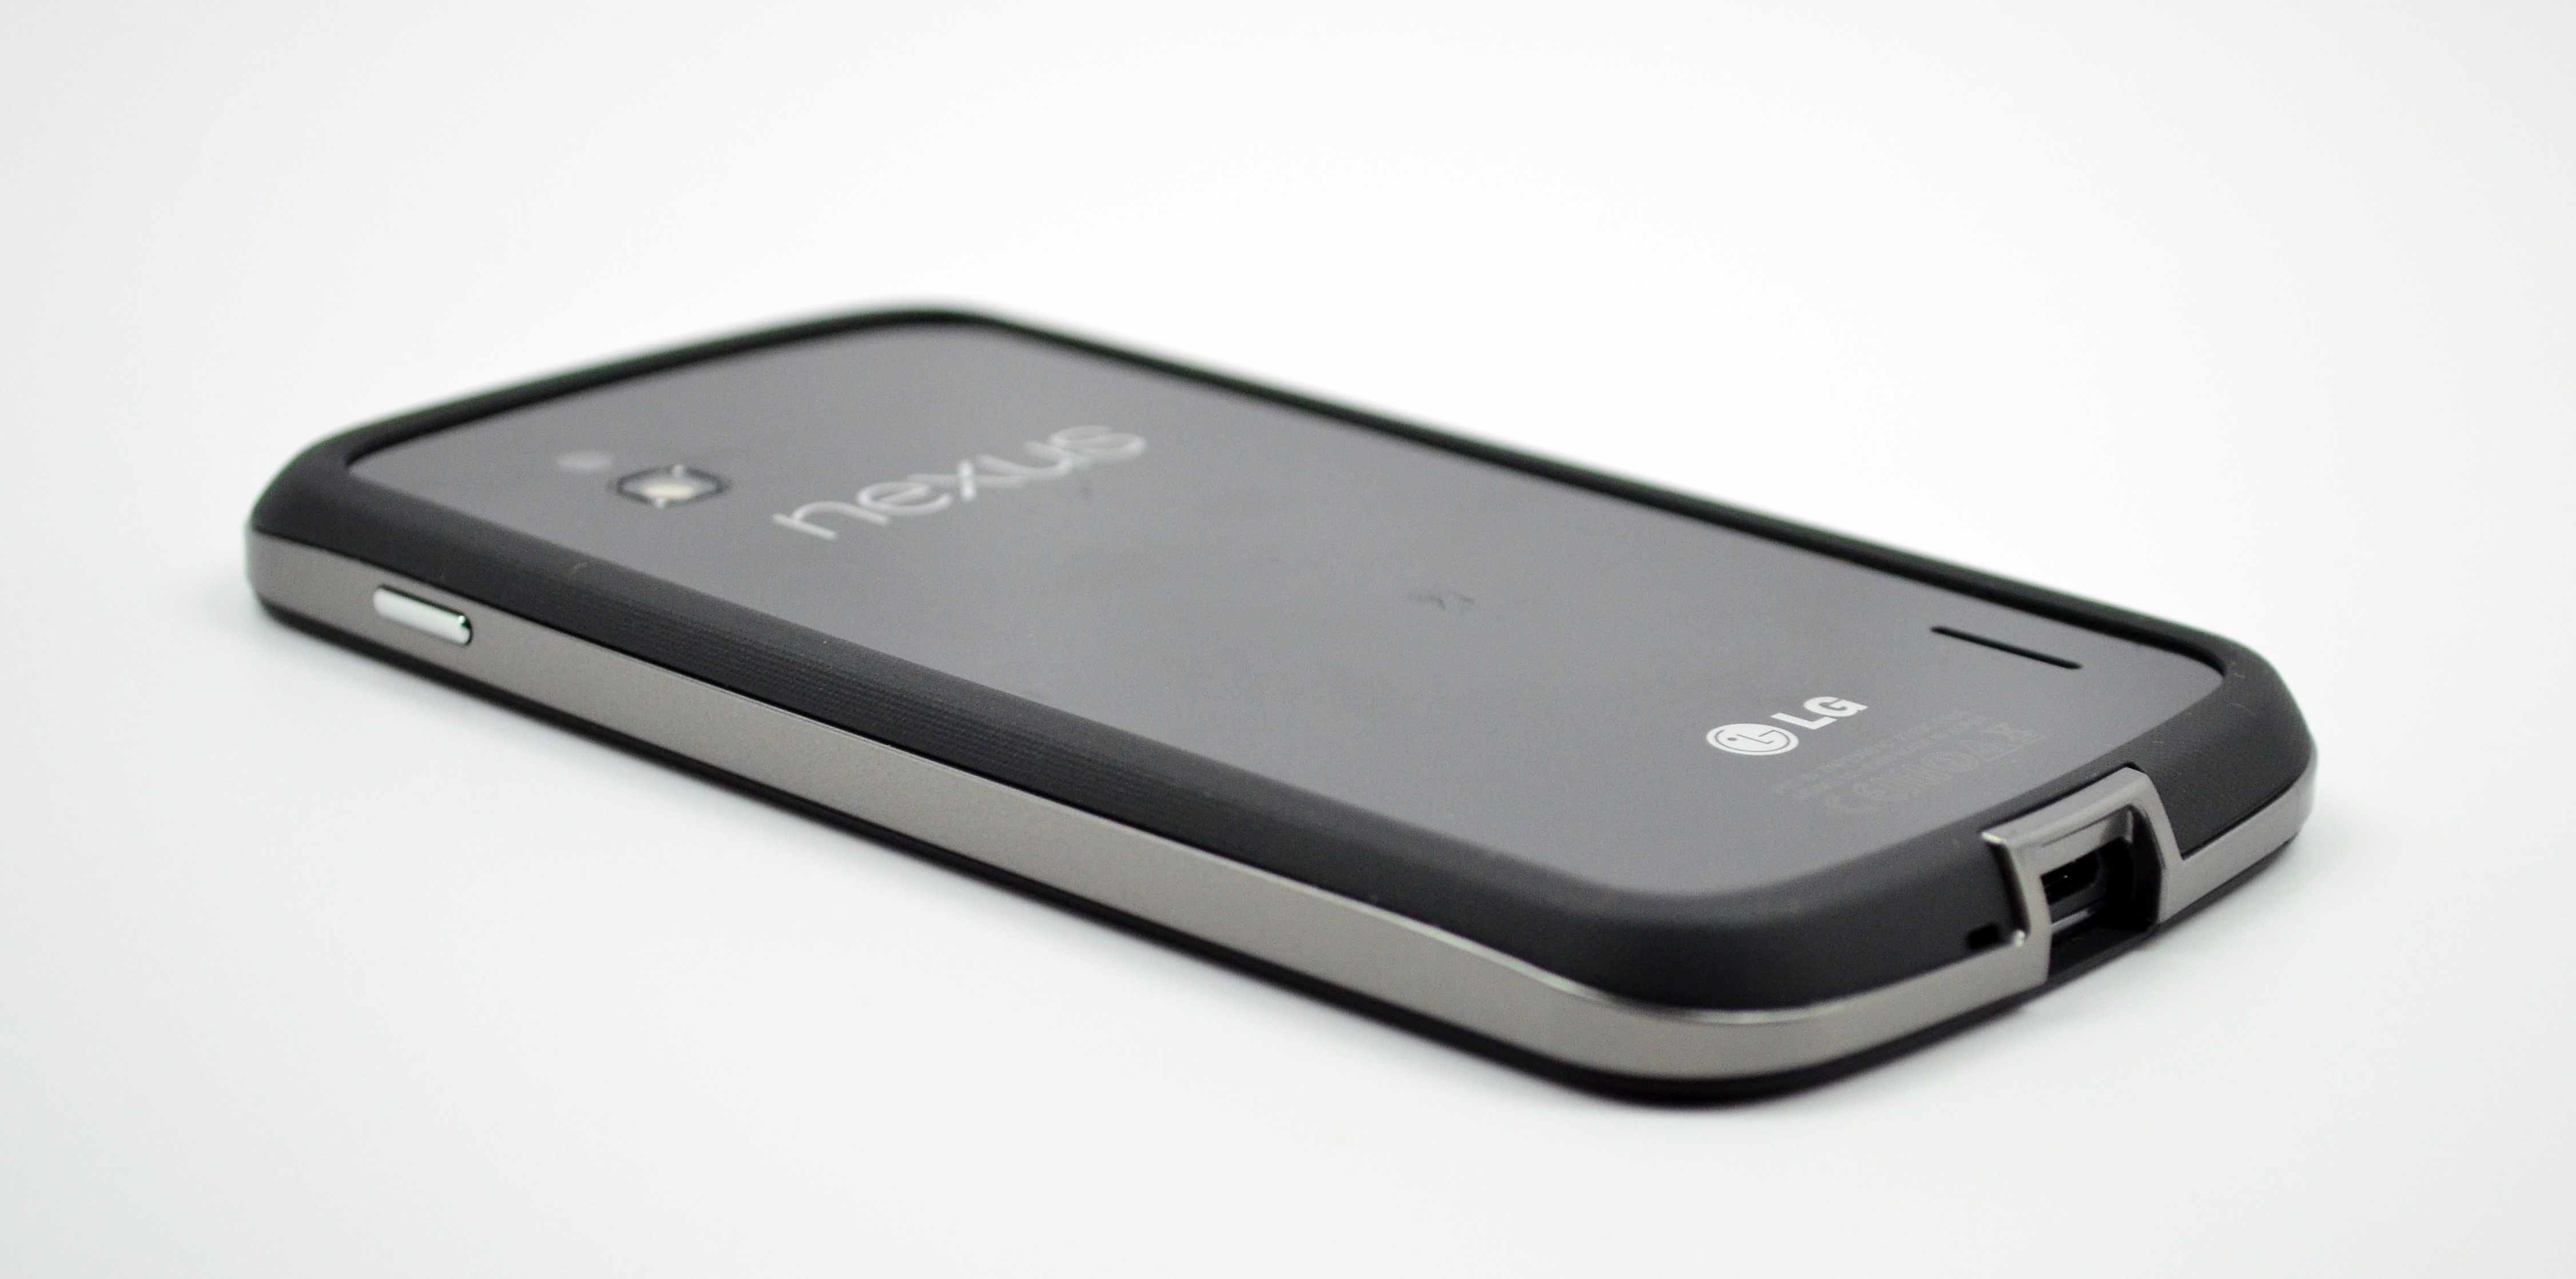 Begraafplaats planter referentie Nexus 4 Bumper Case Review